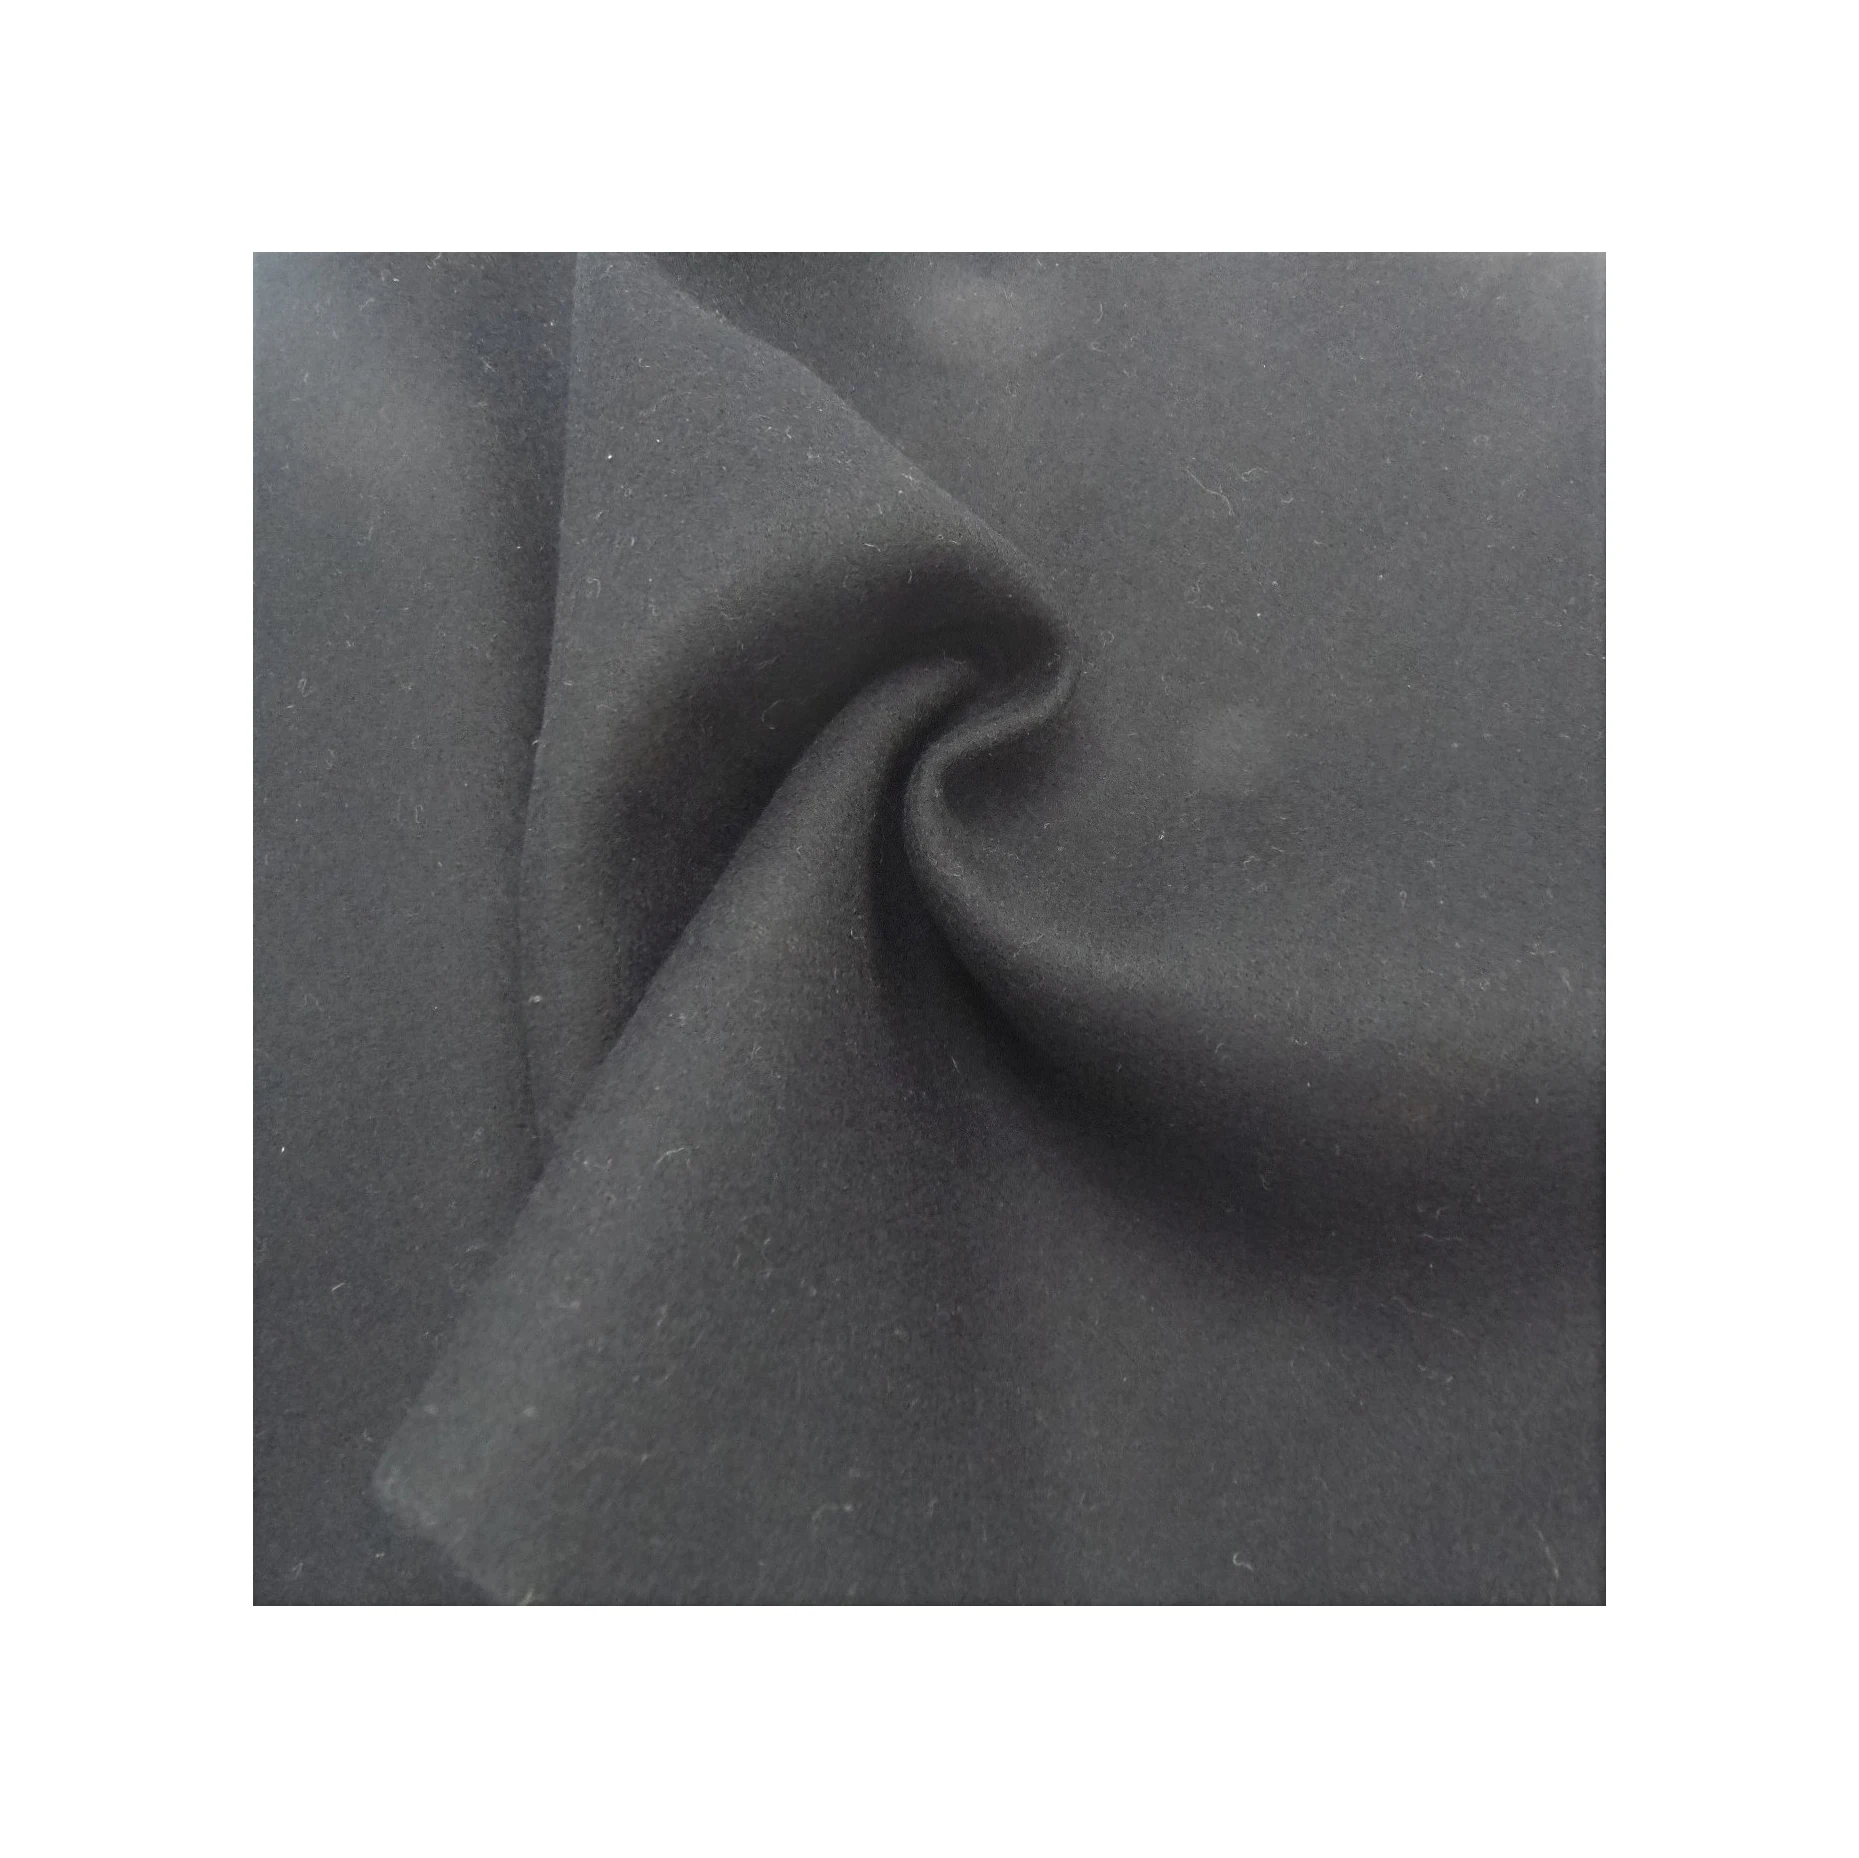 Двухсторонняя шерстяная ткань melton, плотная окрашенная цветная верхняя одежда, тканый флисовый текстиль для верхней одежды